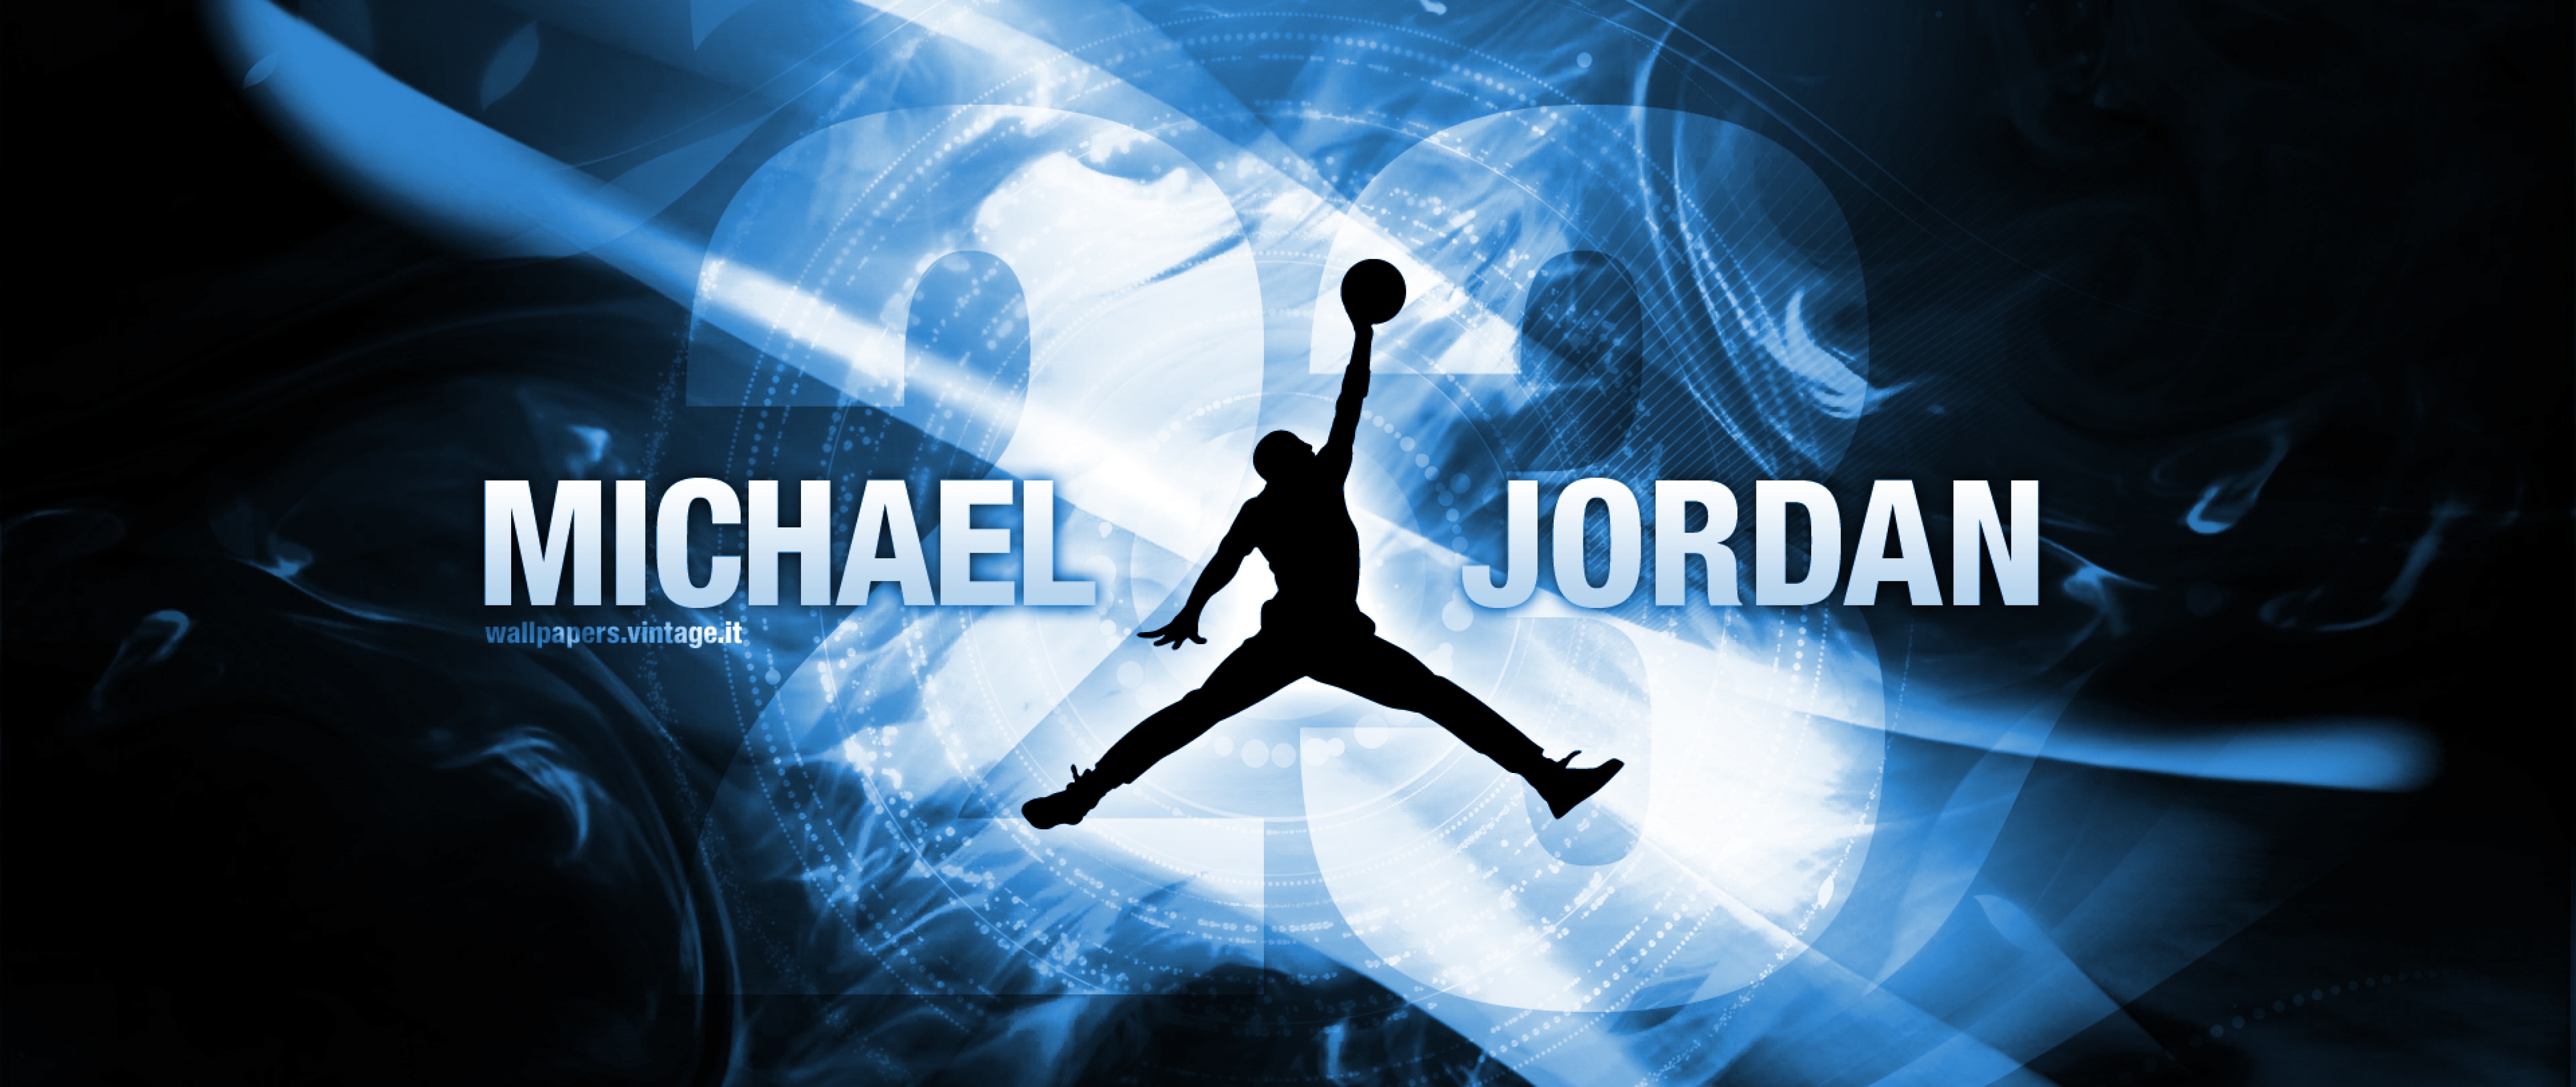 Michael Jordan HD Wallpaper 4K Ultra HD Wide TV - HD Wallpaper ...